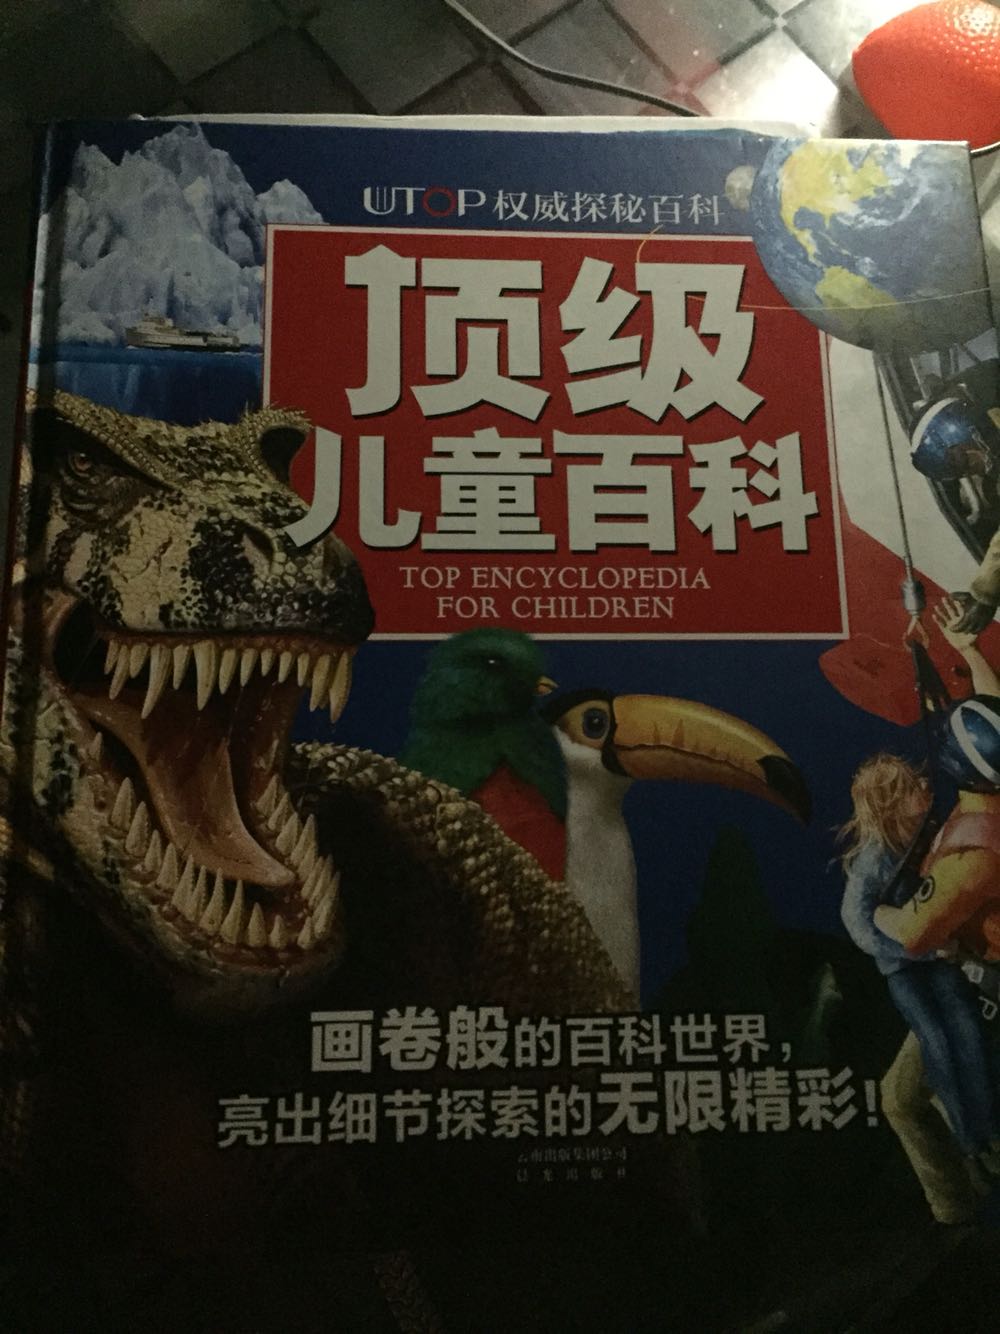 图大逼真，文字解释简单到位，孩子最喜欢这本书，每天拿着翻，特别爱看大恐龙。